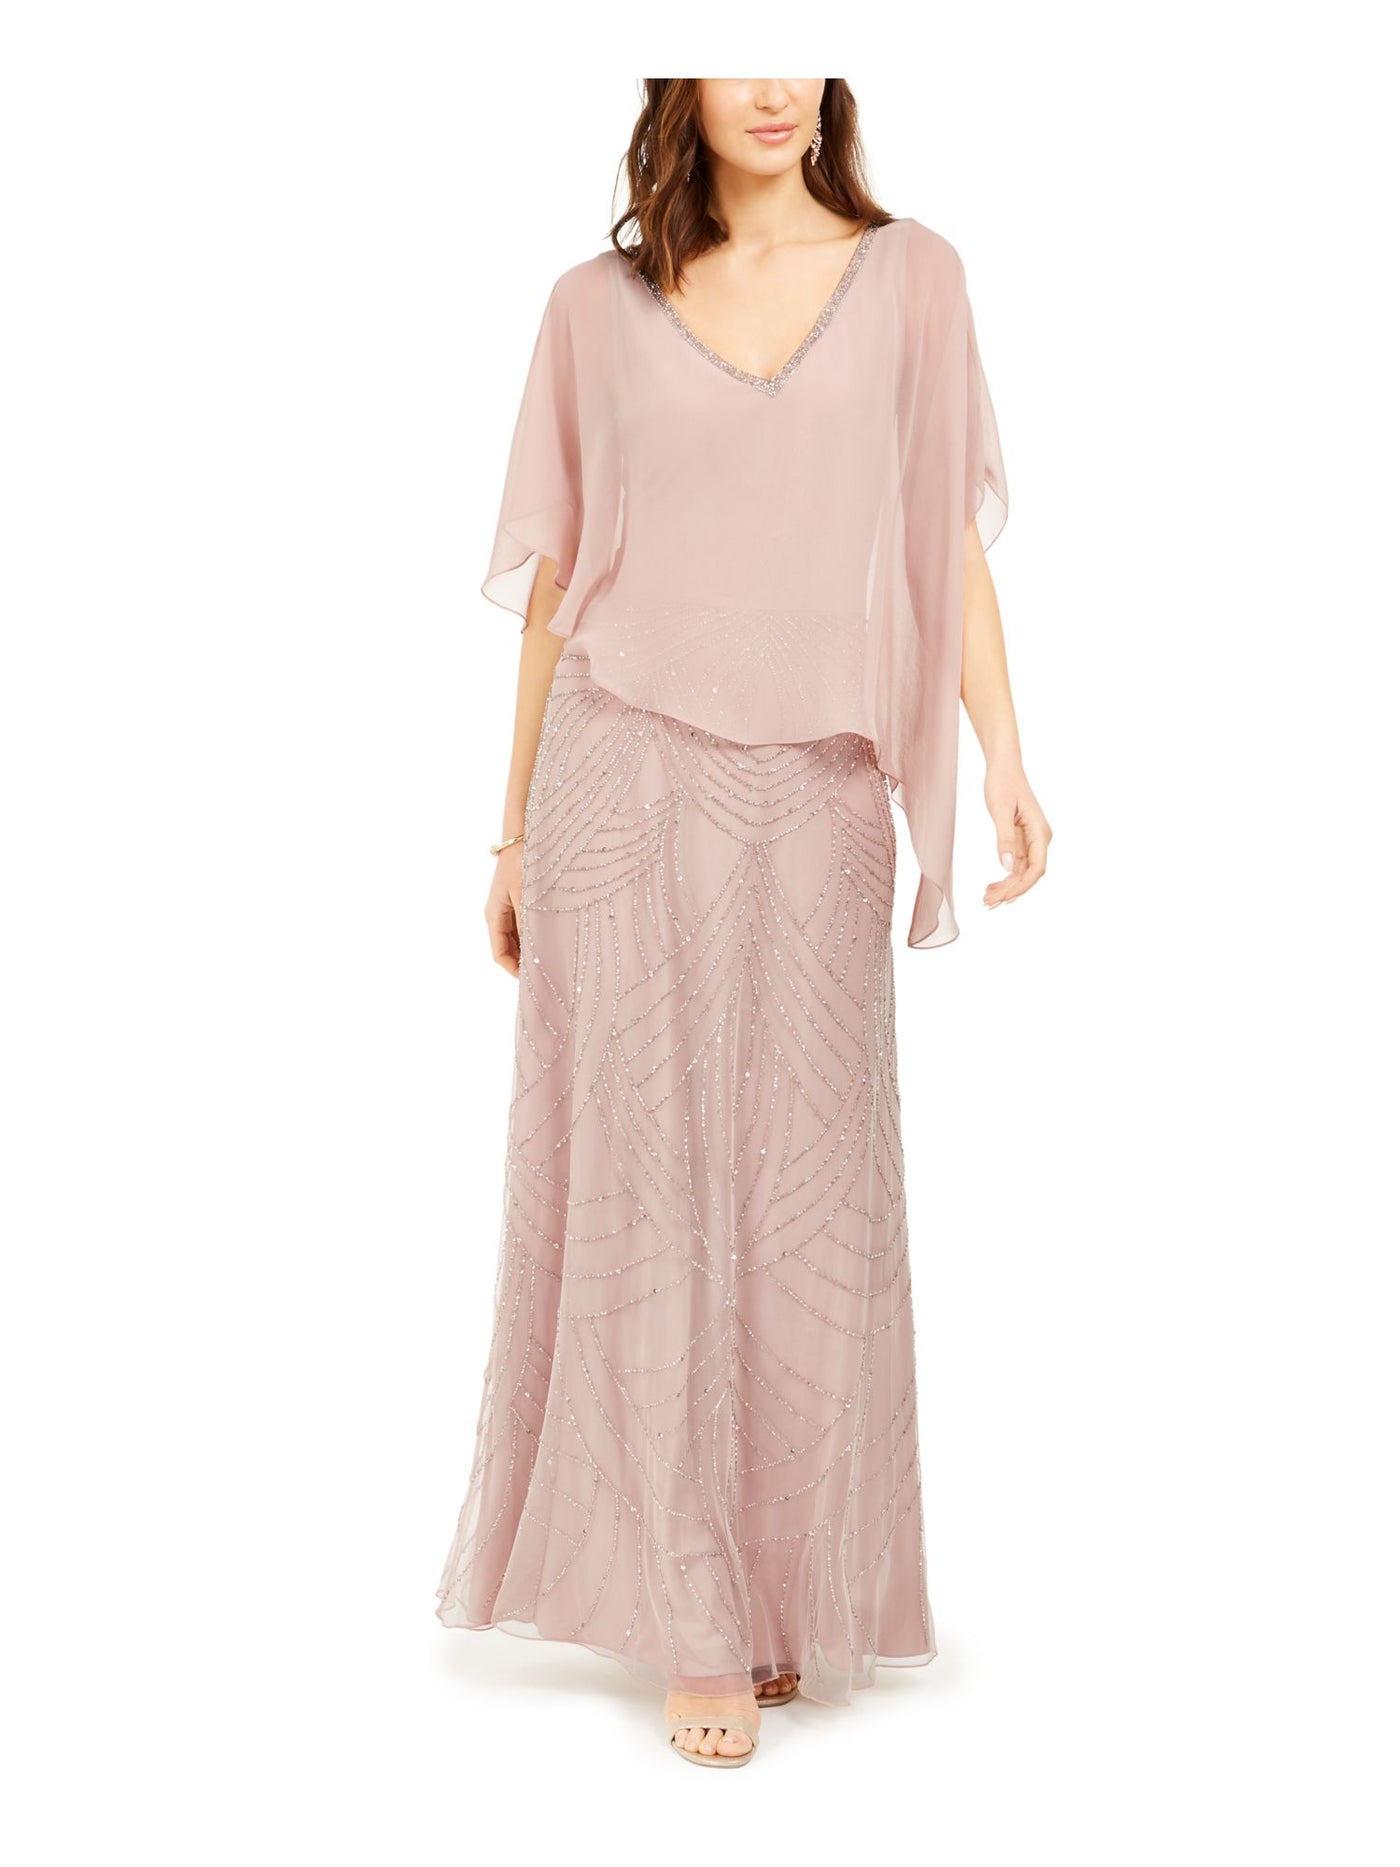 JKARA Womens Pink Beaded Sheer Lined Capelet Sleeveless V Neck Full-Length Formal Gown Dress 6